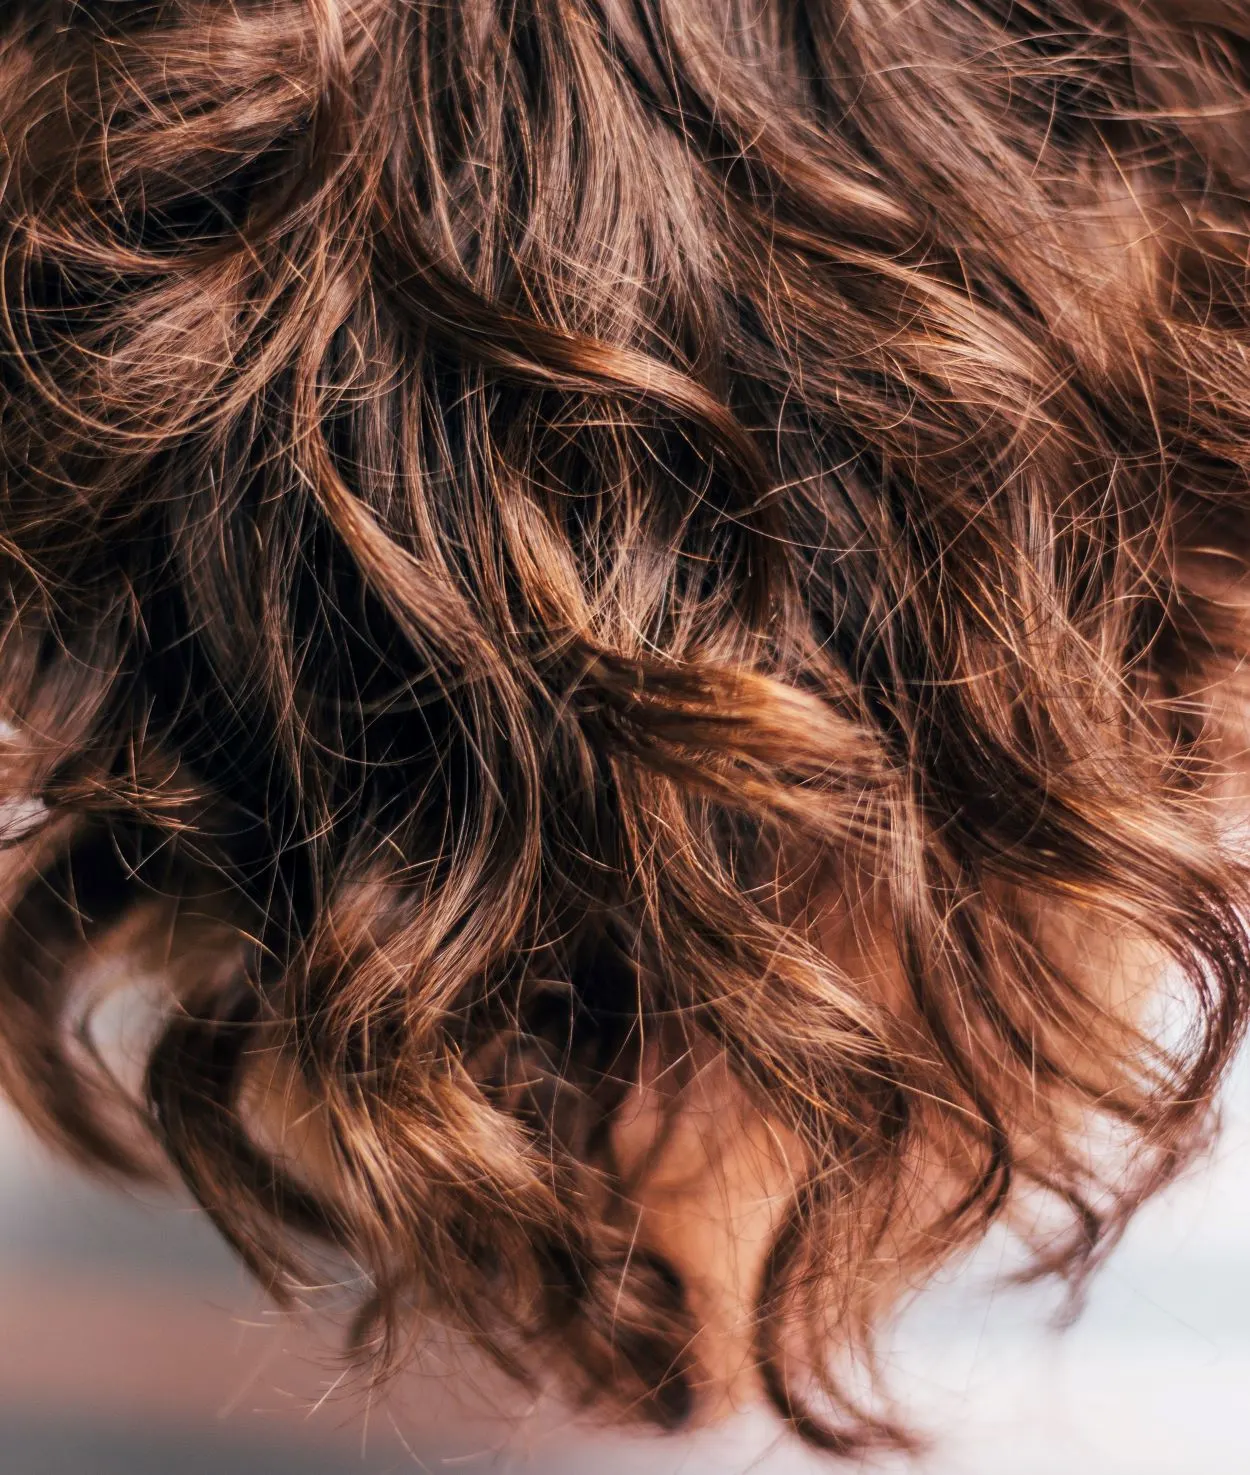  ¿Cuál es la diferencia entre el pelo ondulado y el pelo rizado? - Todas las diferencias